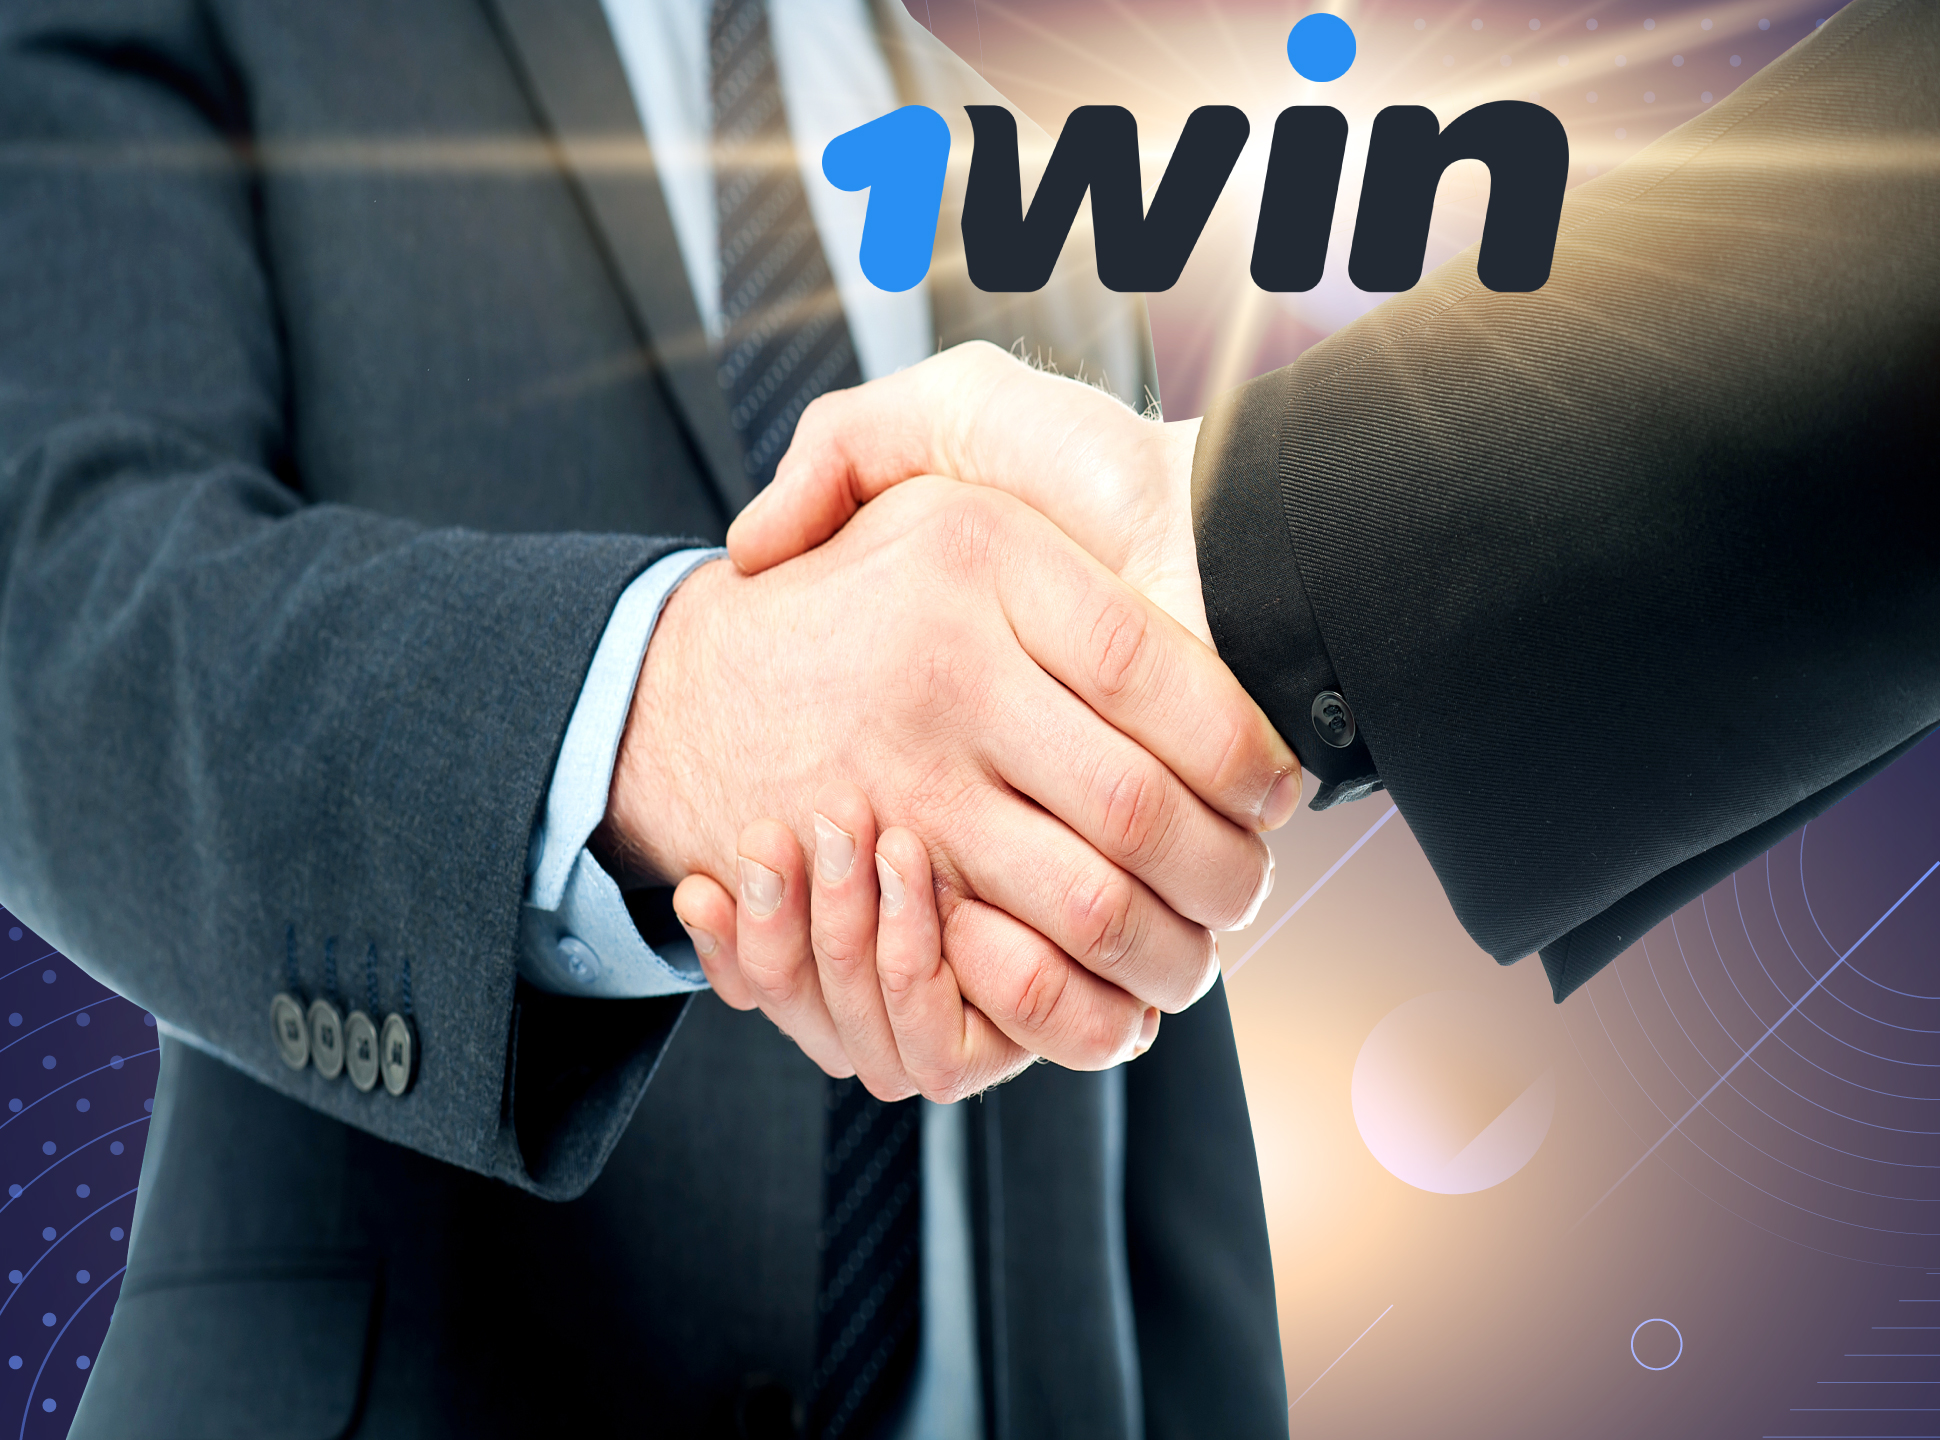 Junte-se ao programa de afiliados 1win para receber bônus extras da parceria.